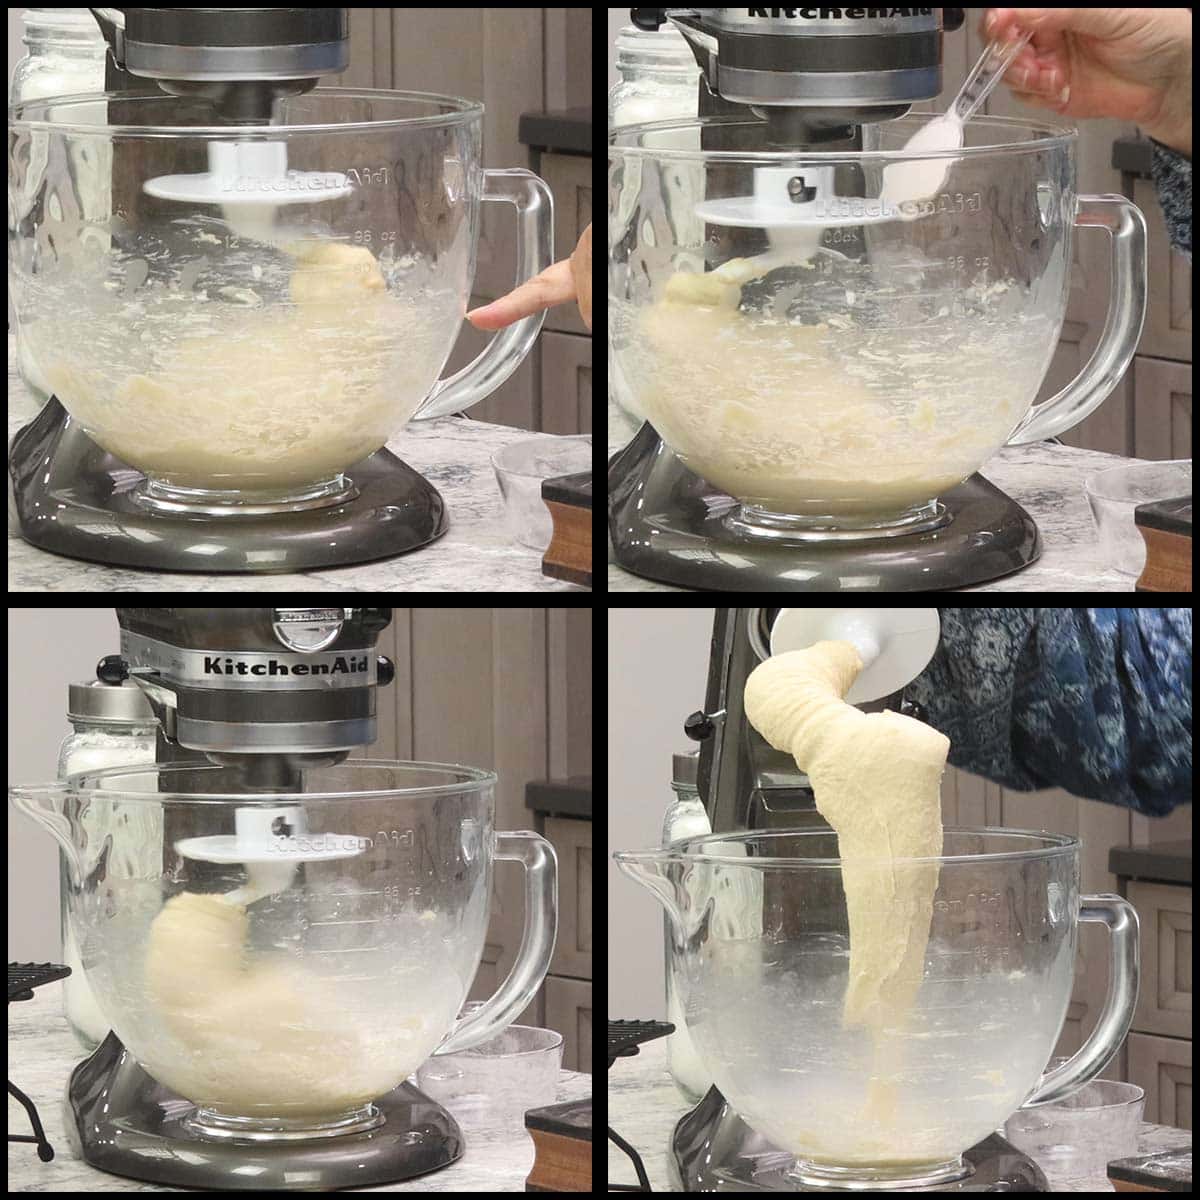 adding a little more flour to the brioche dough.